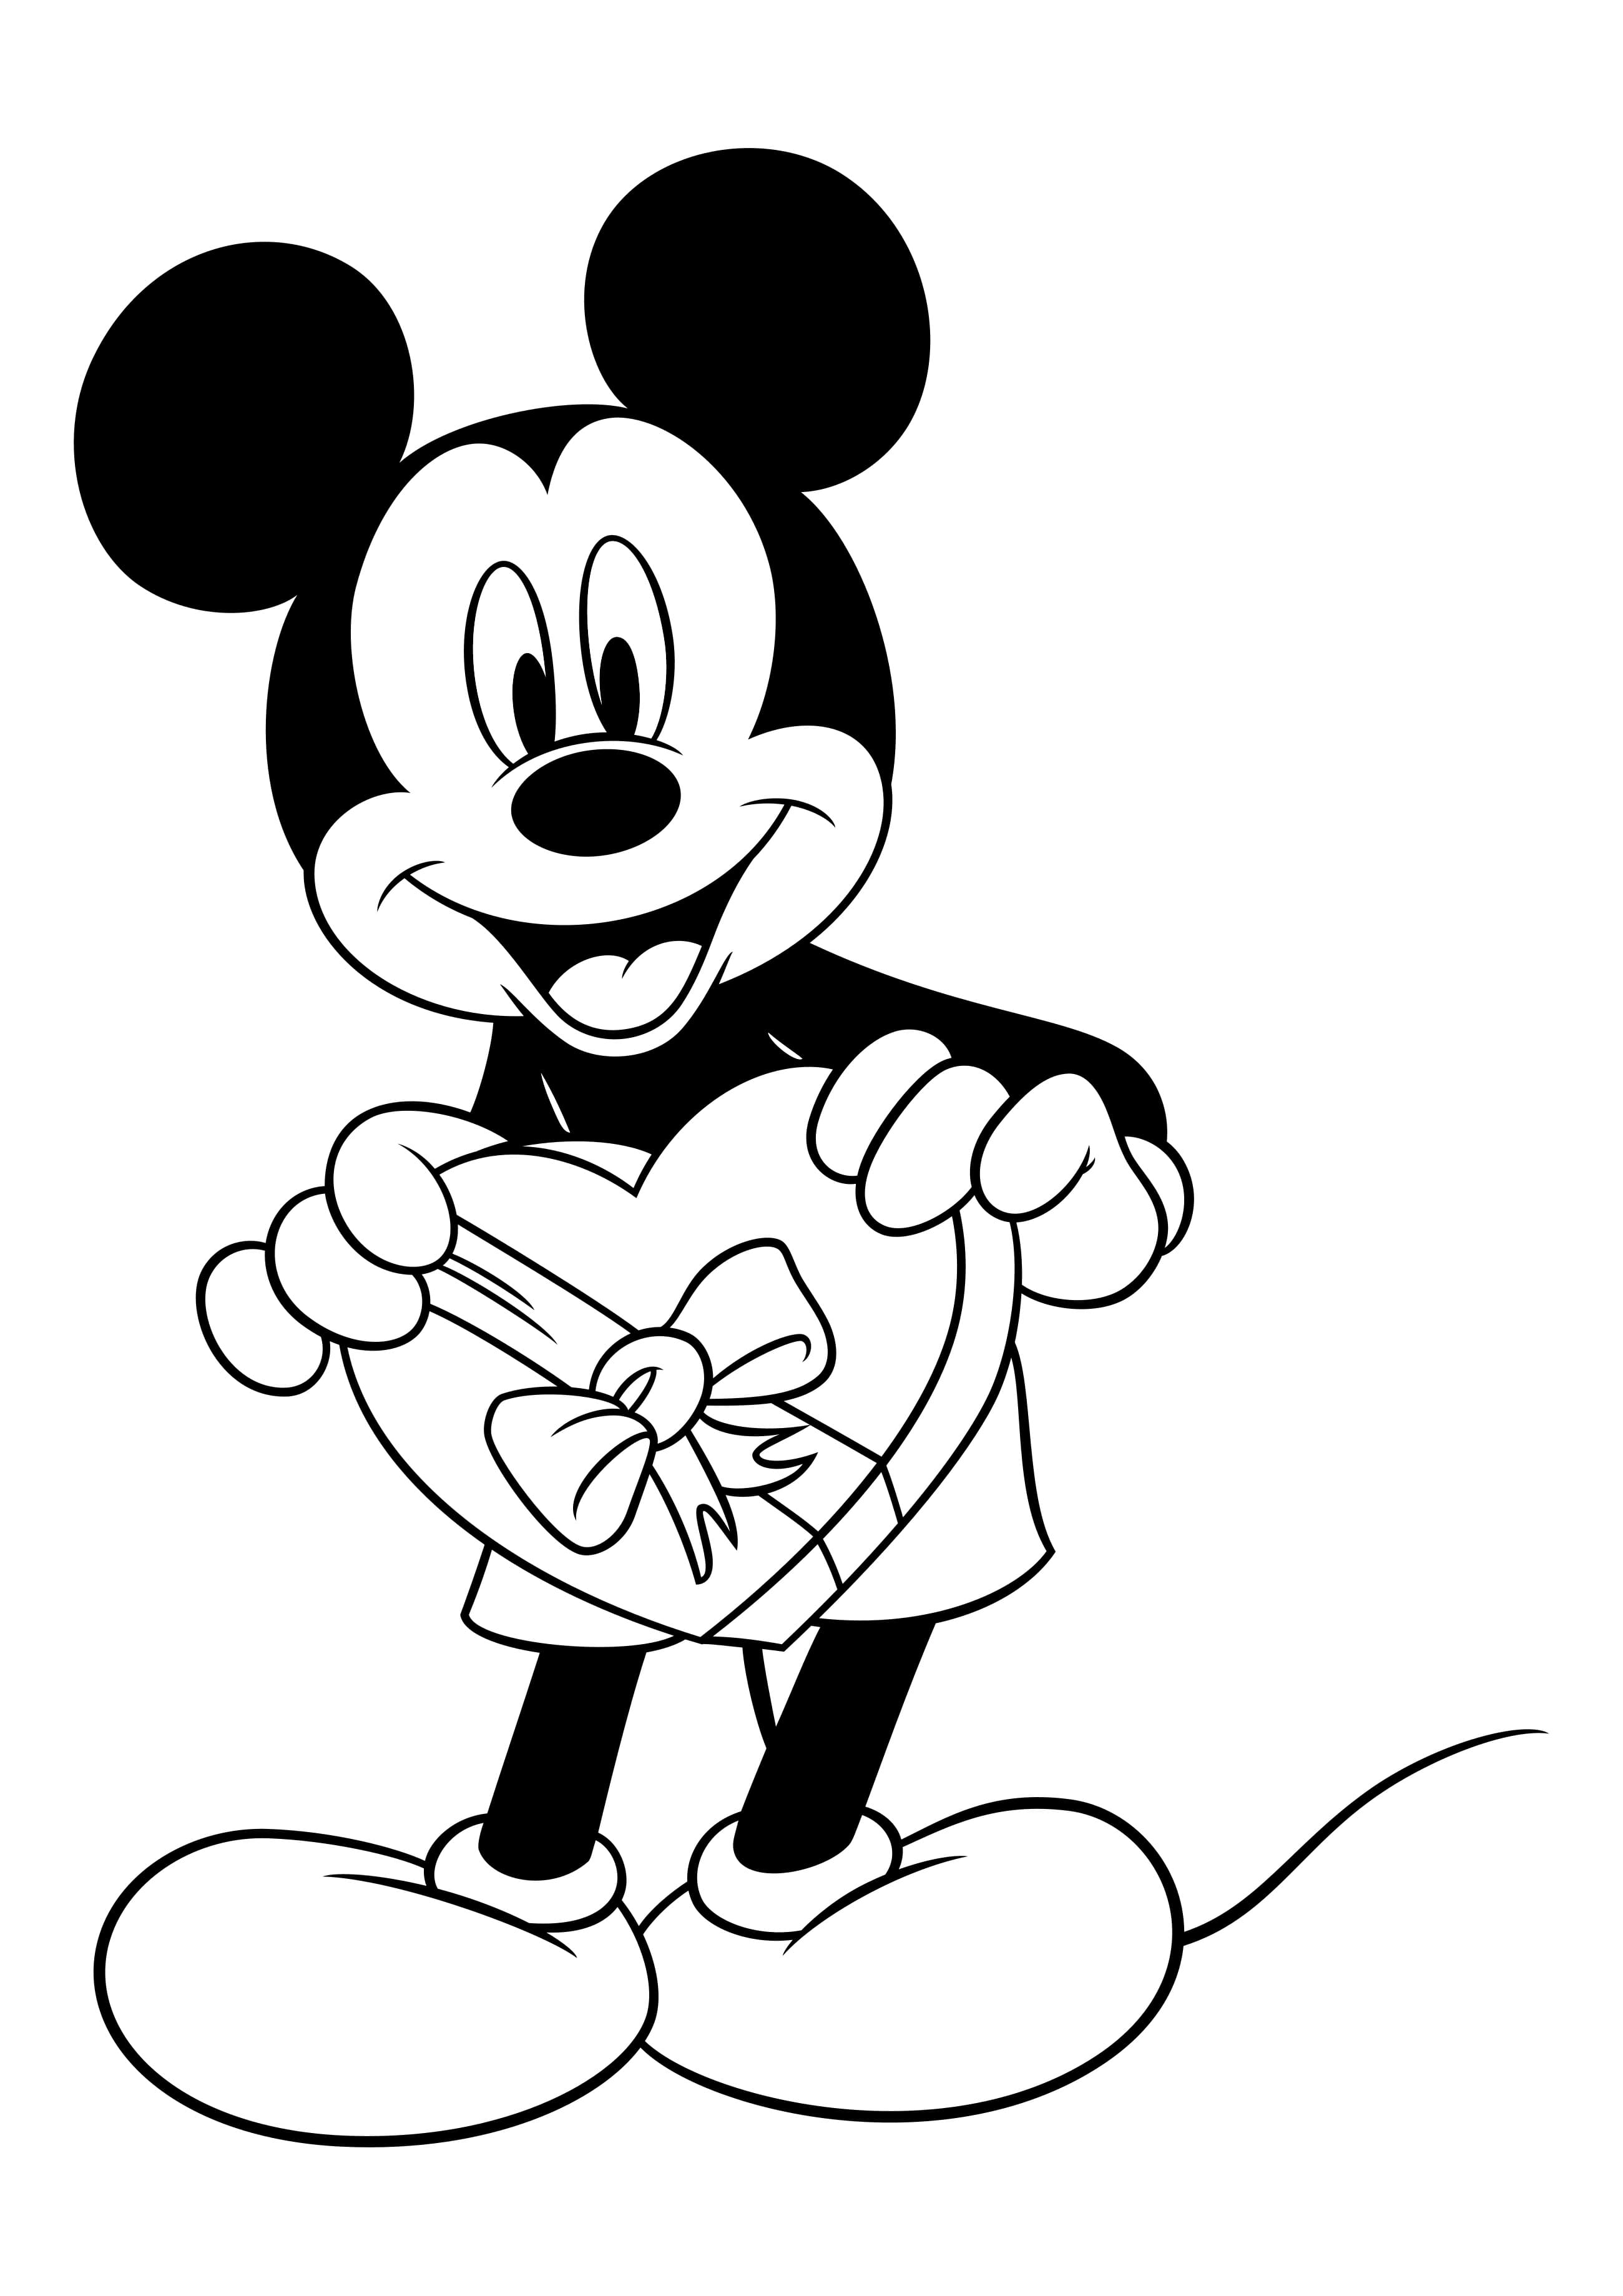 Para Colorear Día de San Valentín Mickey mouse regala dulces a Minnie mouse